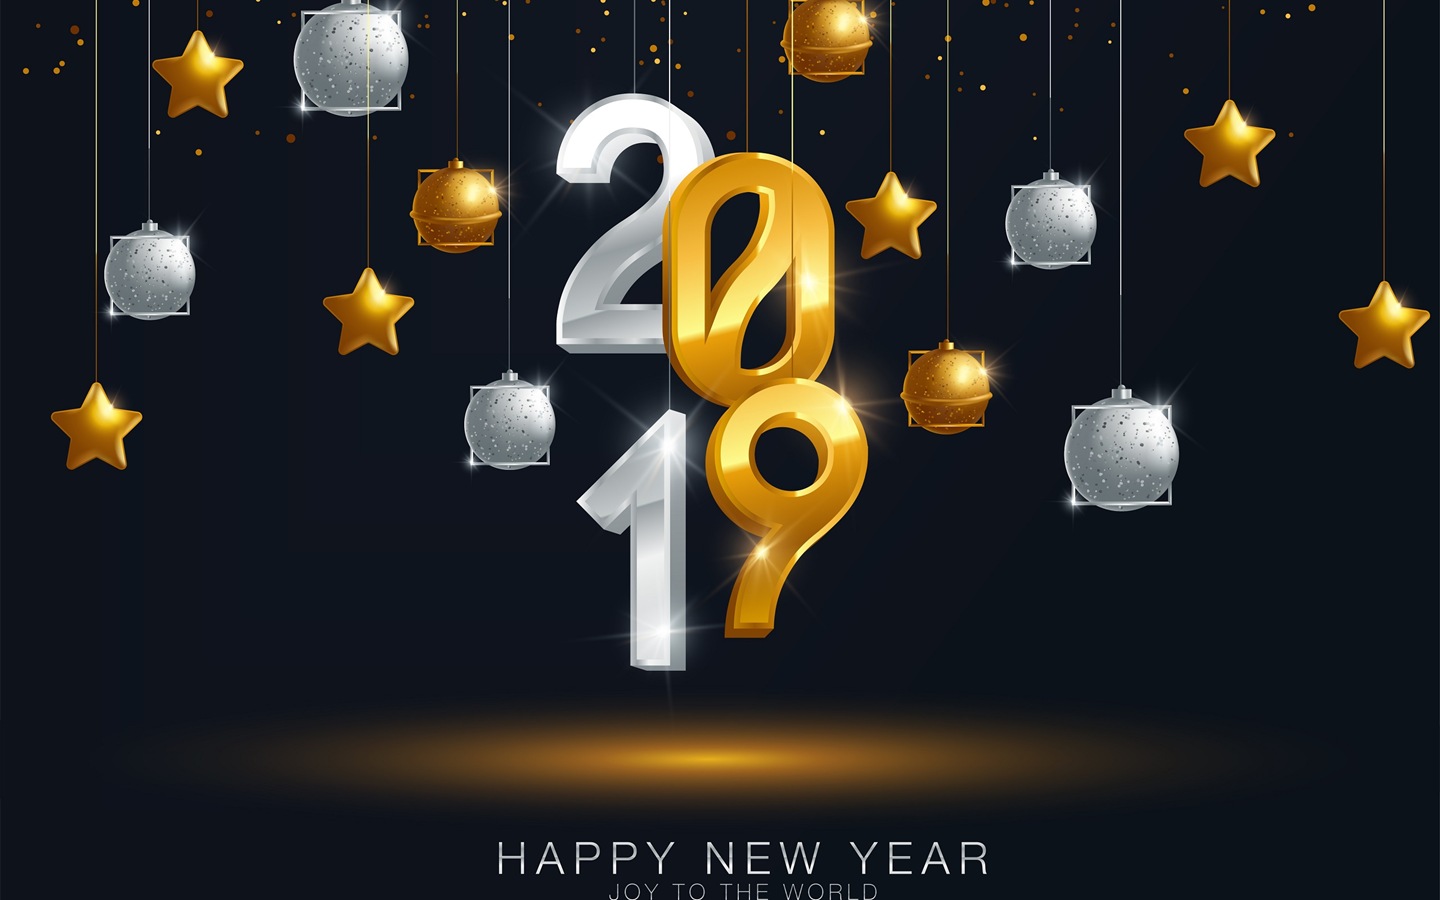 Feliz año nuevo 2019 HD wallpapers #12 - 1440x900